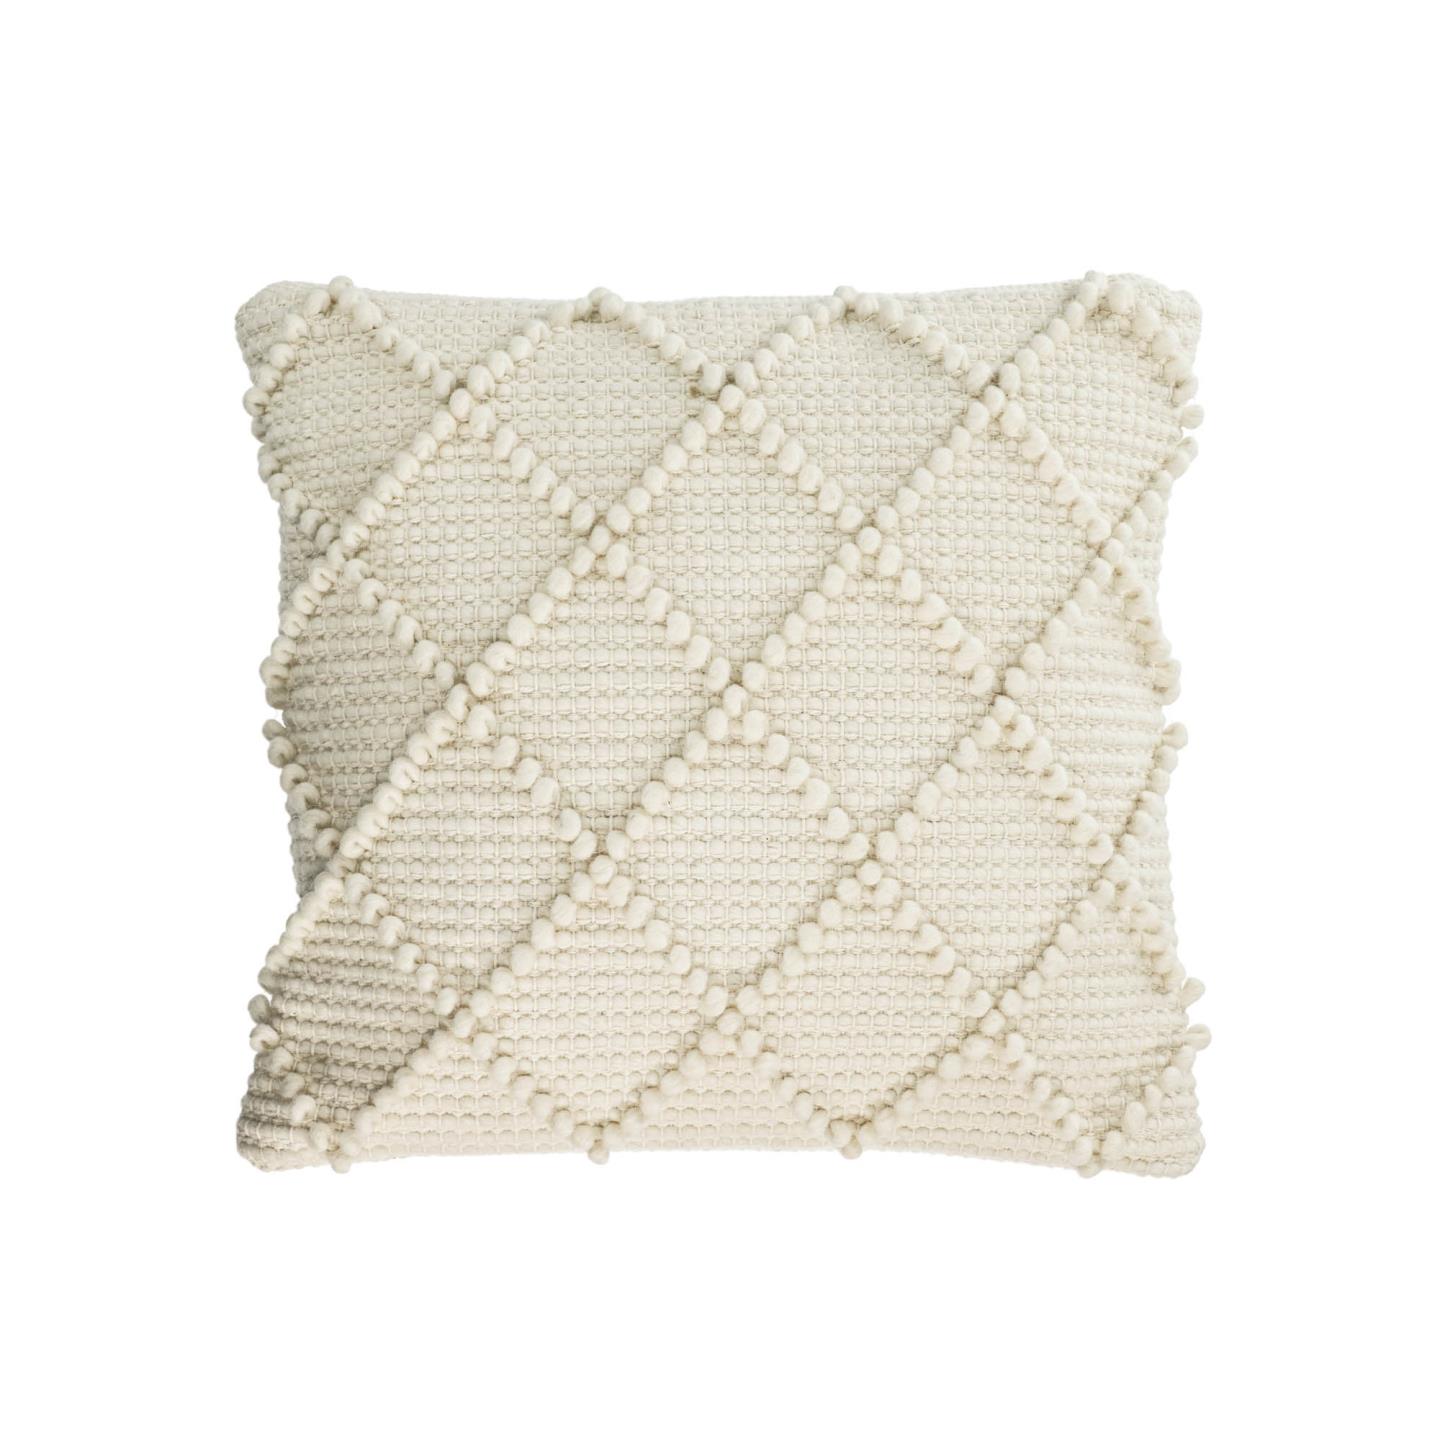 Чехол на подушку Kerenise из шерсти и хлопка, белый цвет 45 x 45 см